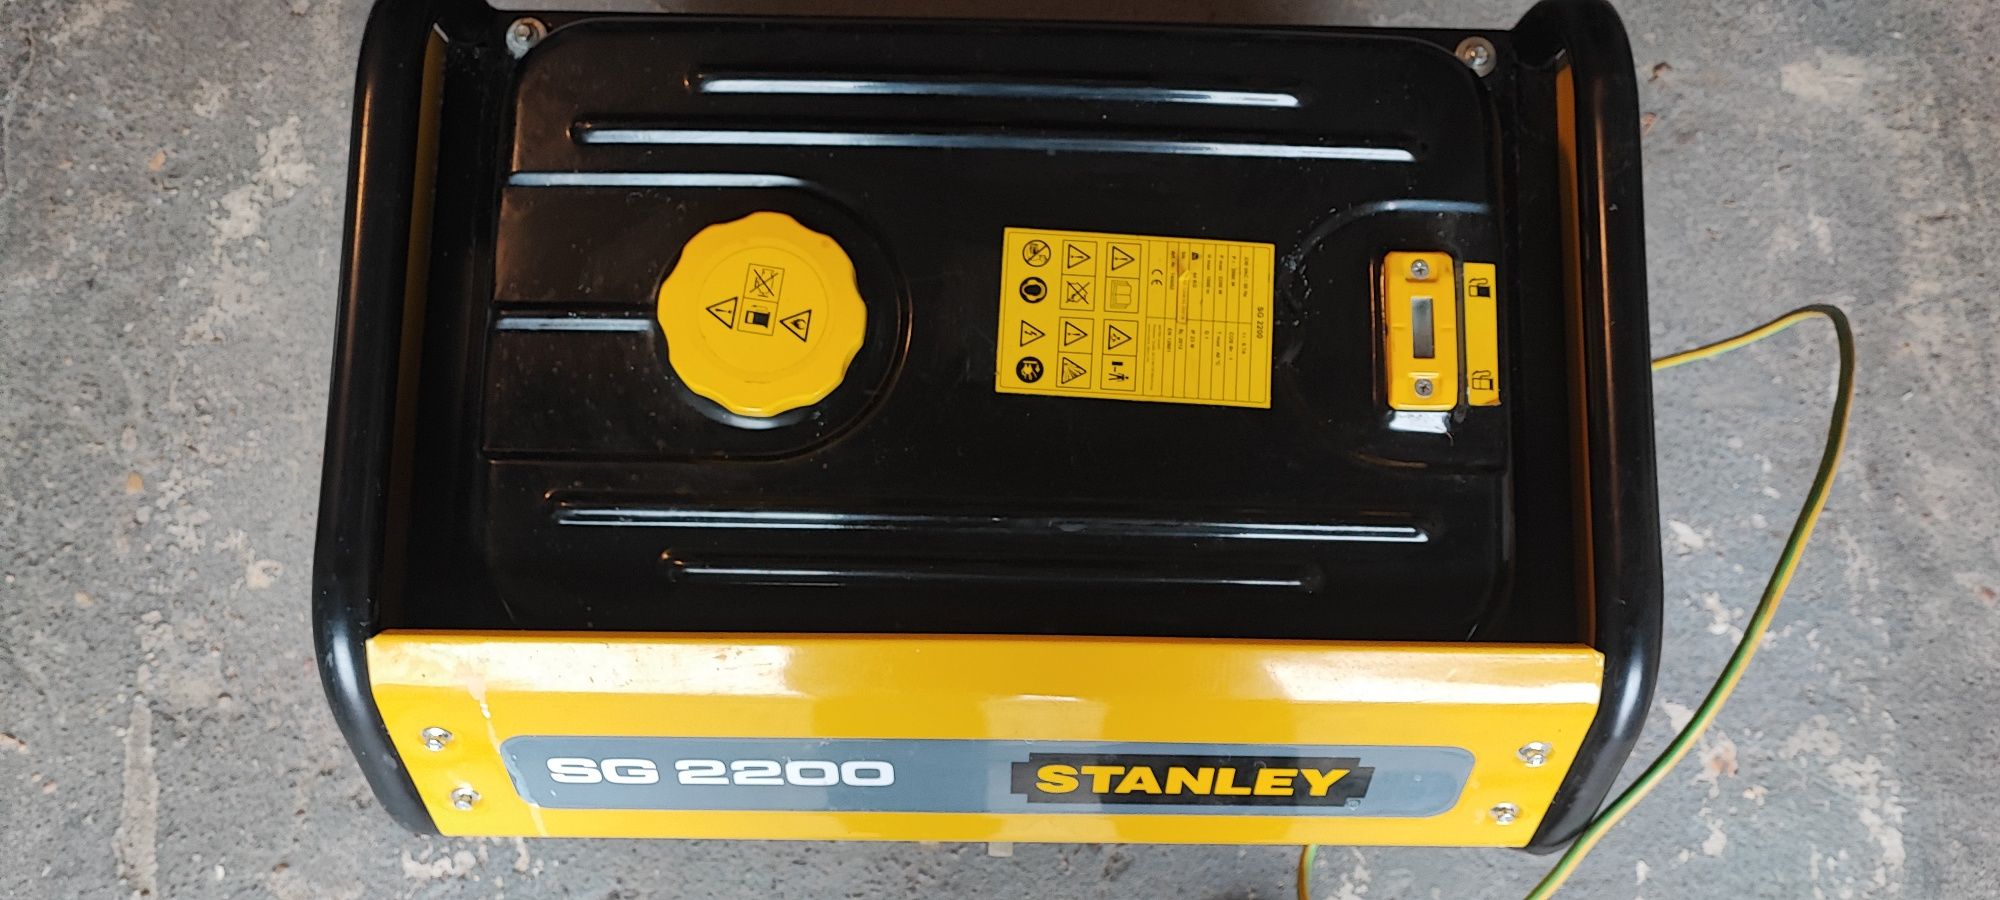 Stanley SG 2200 Agregat prądotwórczy  2200 W